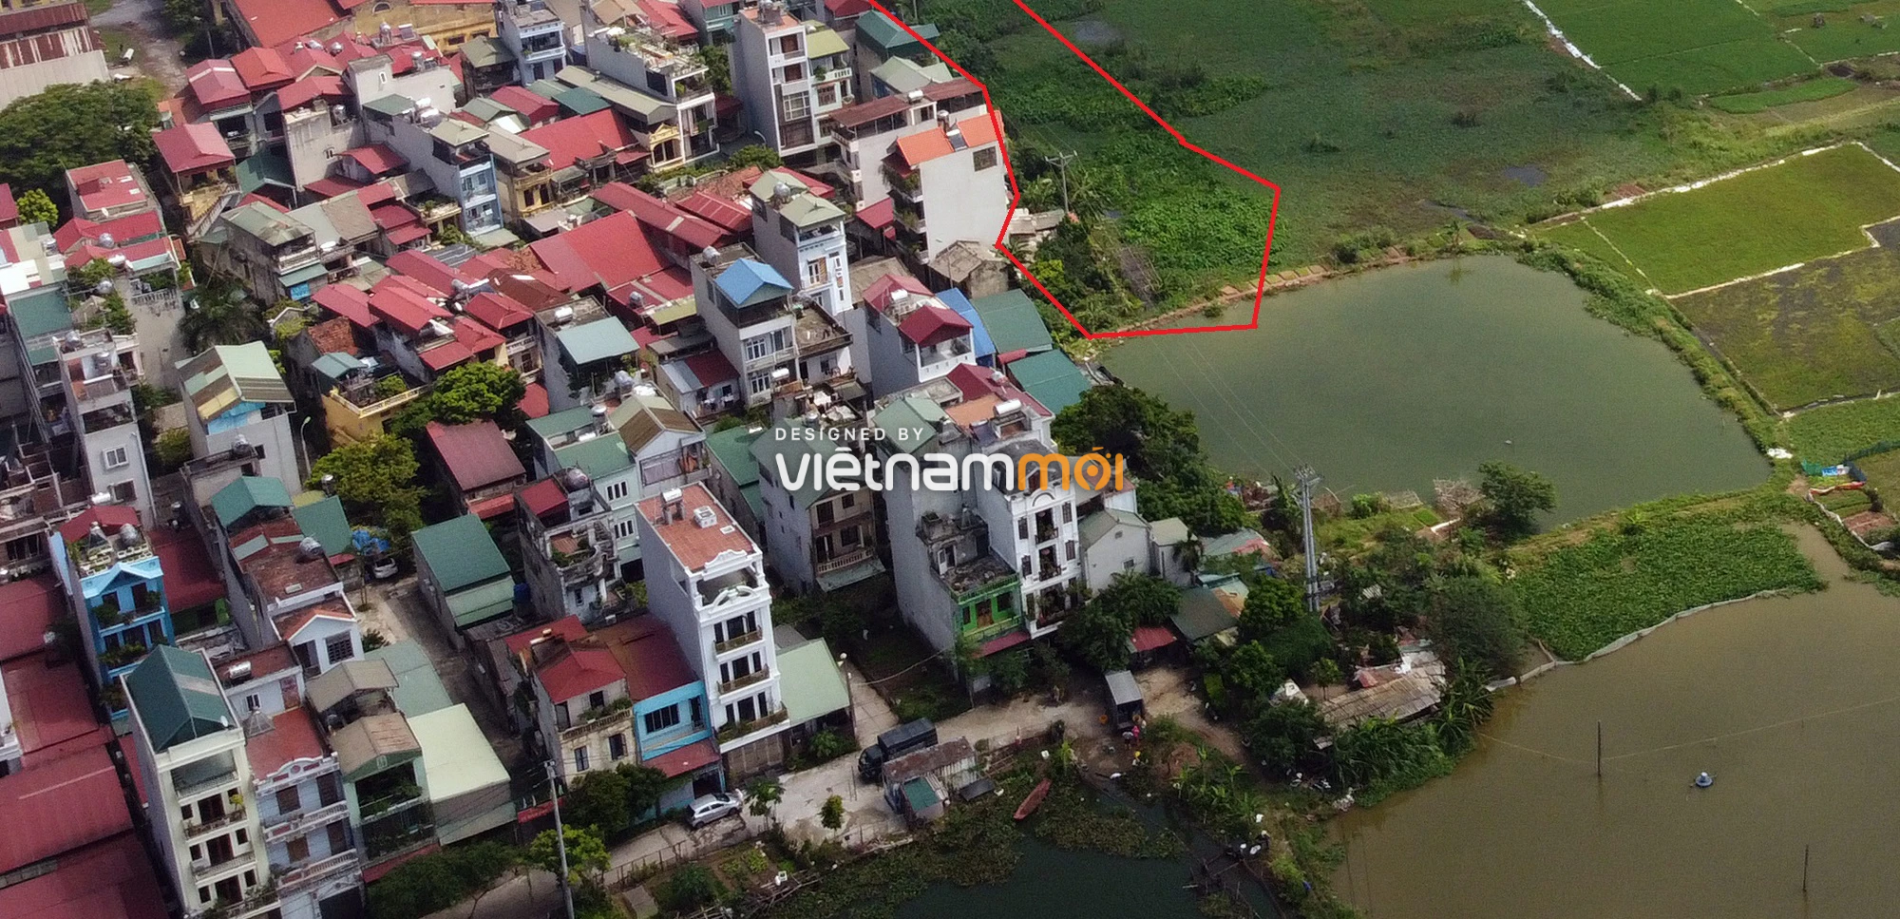 Những khu đất sắp thu hồi để mở đường ở xã Ngọc Hồi, Thanh Trì, Hà Nội (phần 1) - Ảnh 16.